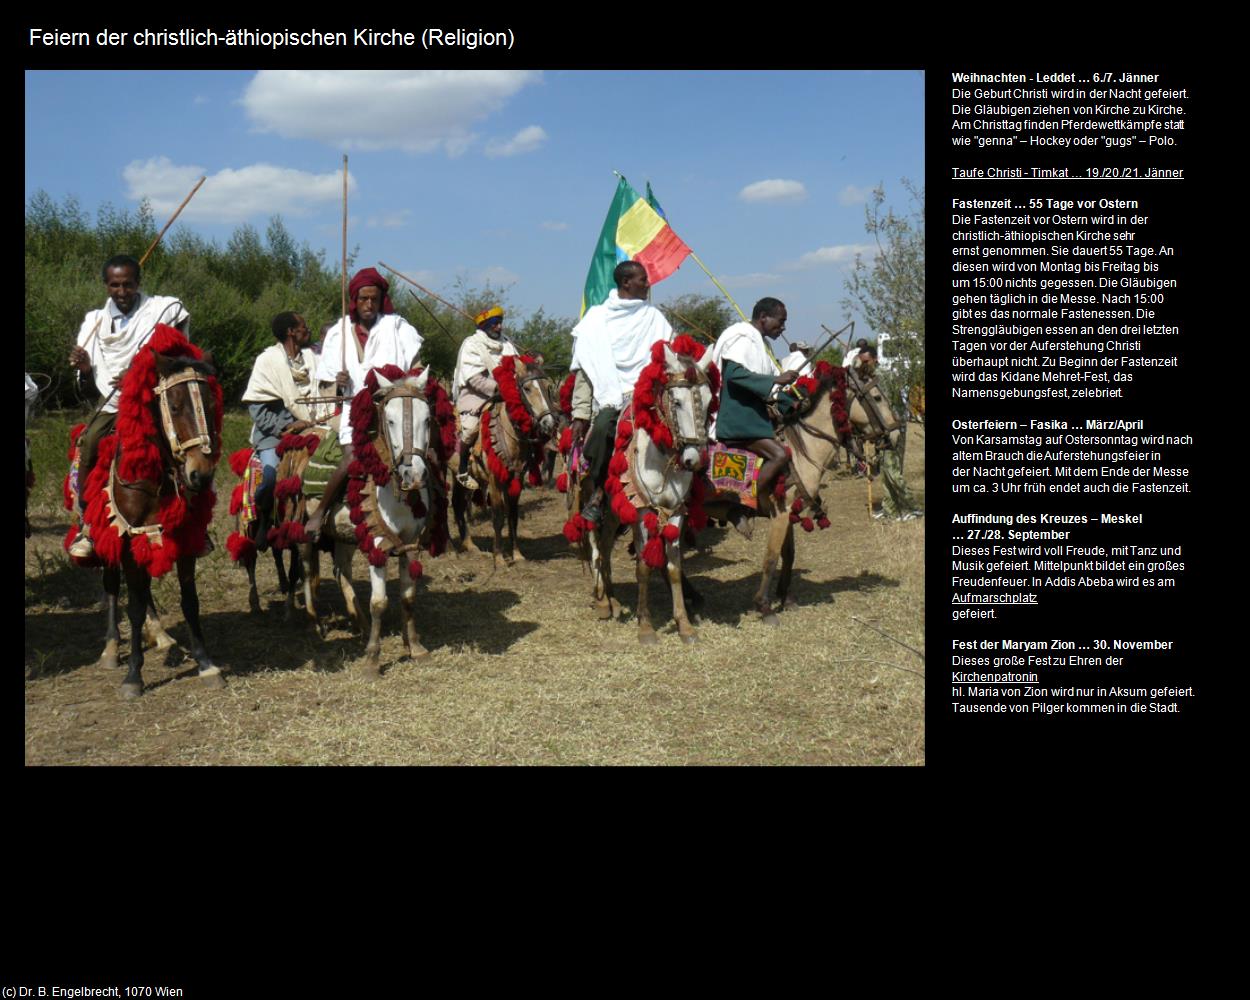 Religiöse Feiern (+Religion) in Äthiopien(c)B.Engelbrecht